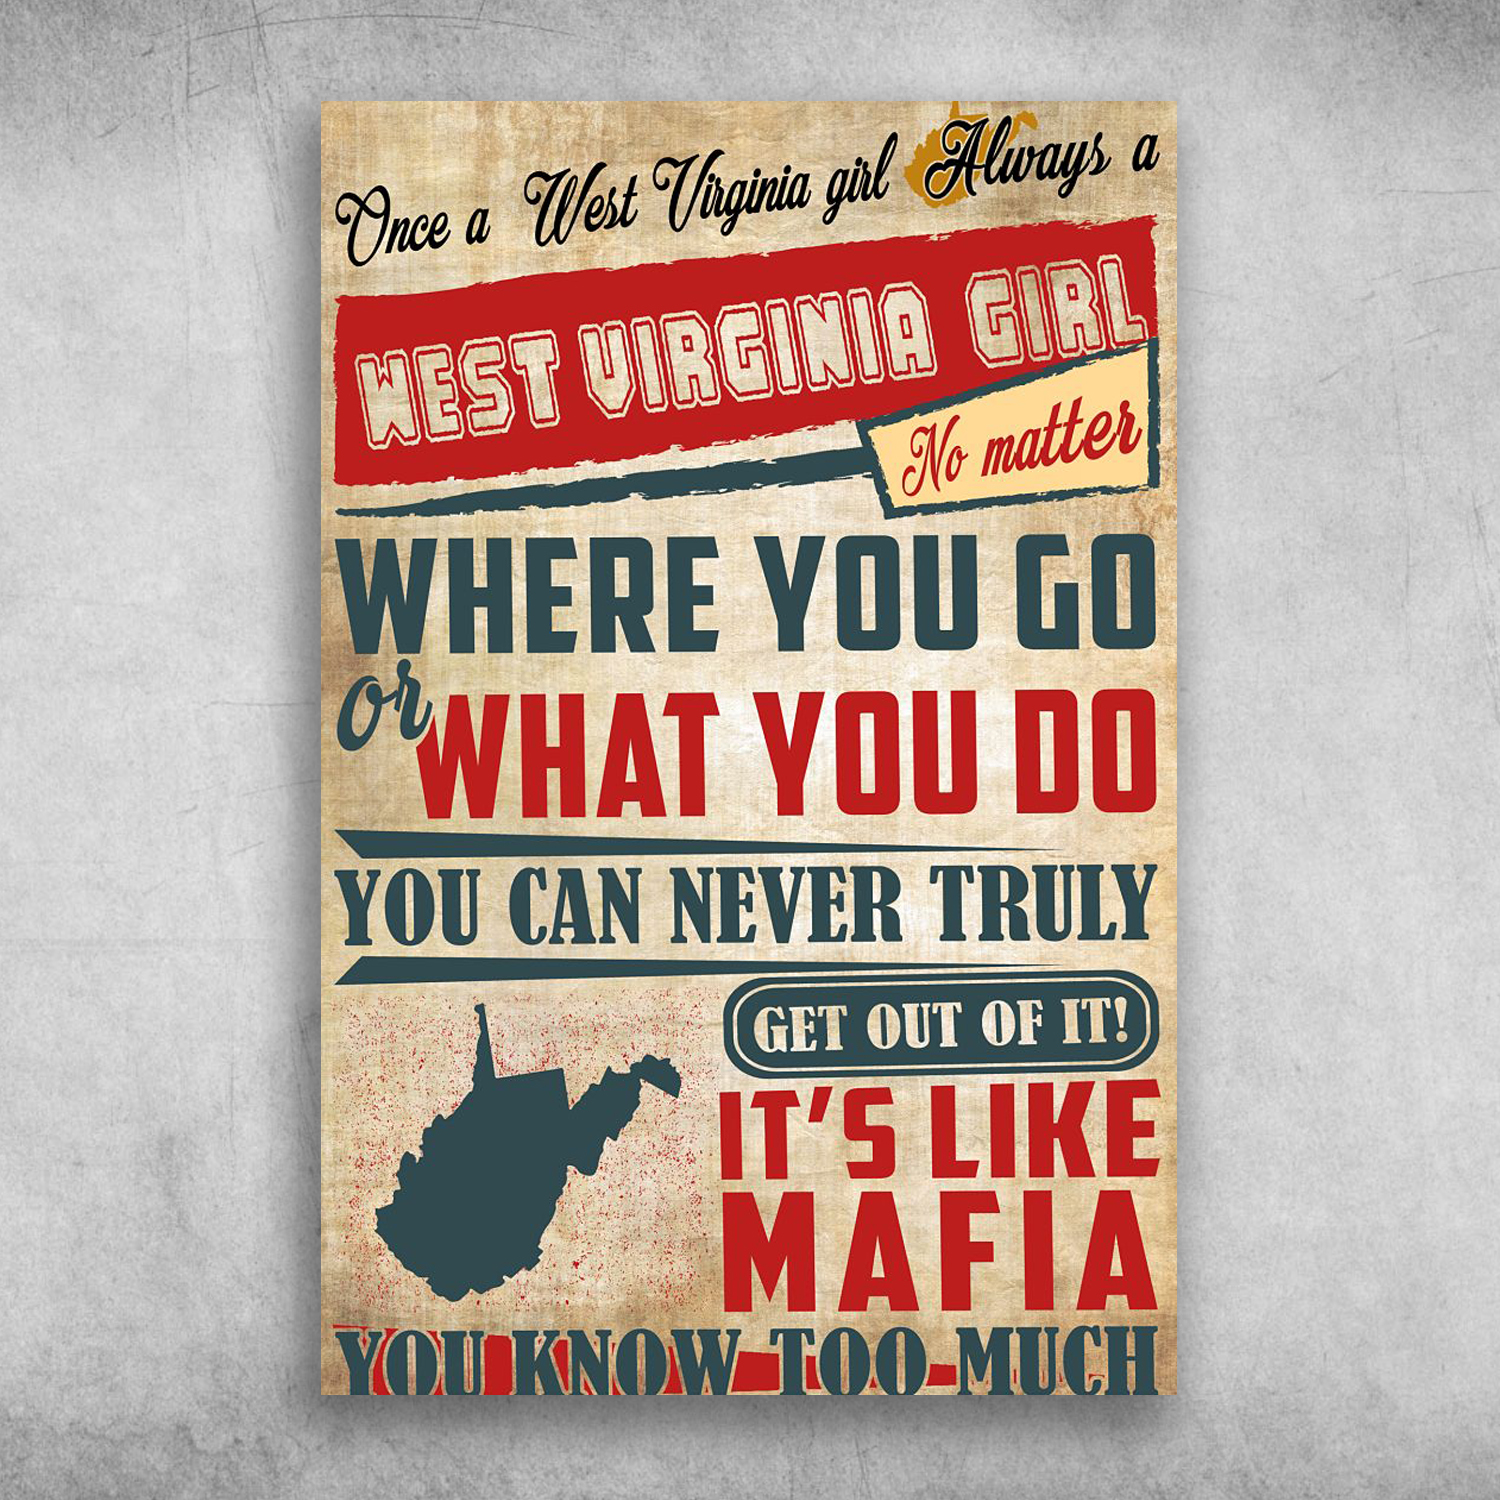 Once A West Virginia Girl Always A West Virginia Girl